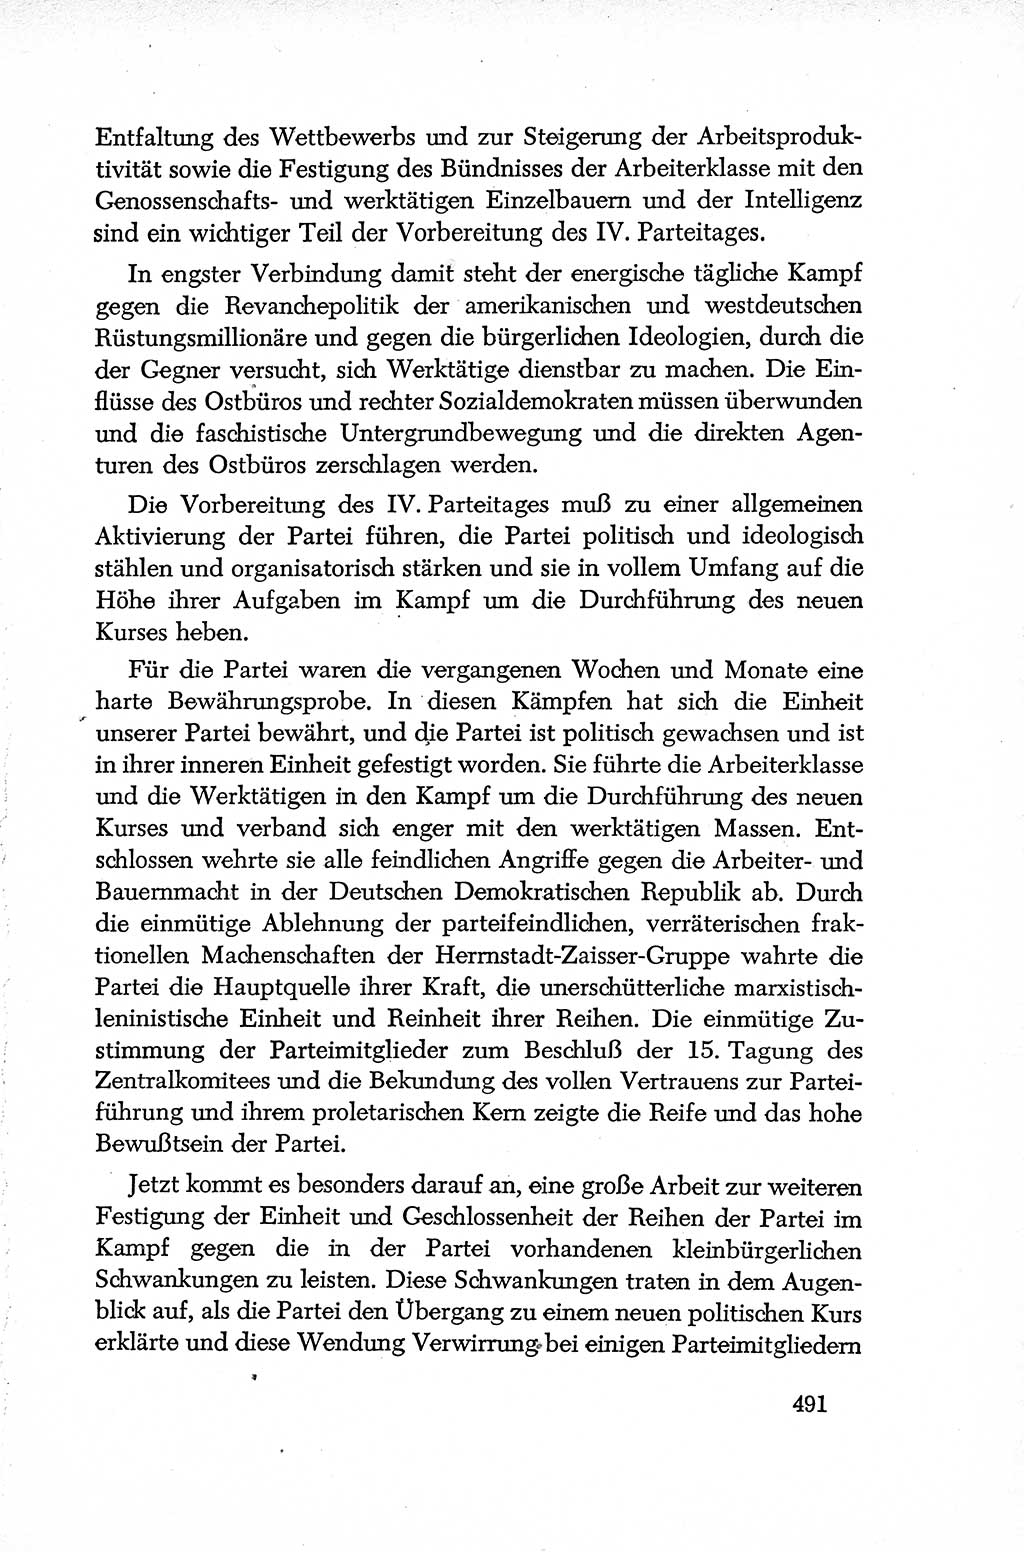 Dokumente der Sozialistischen Einheitspartei Deutschlands (SED) [Deutsche Demokratische Republik (DDR)] 1952-1953, Seite 491 (Dok. SED DDR 1952-1953, S. 491)